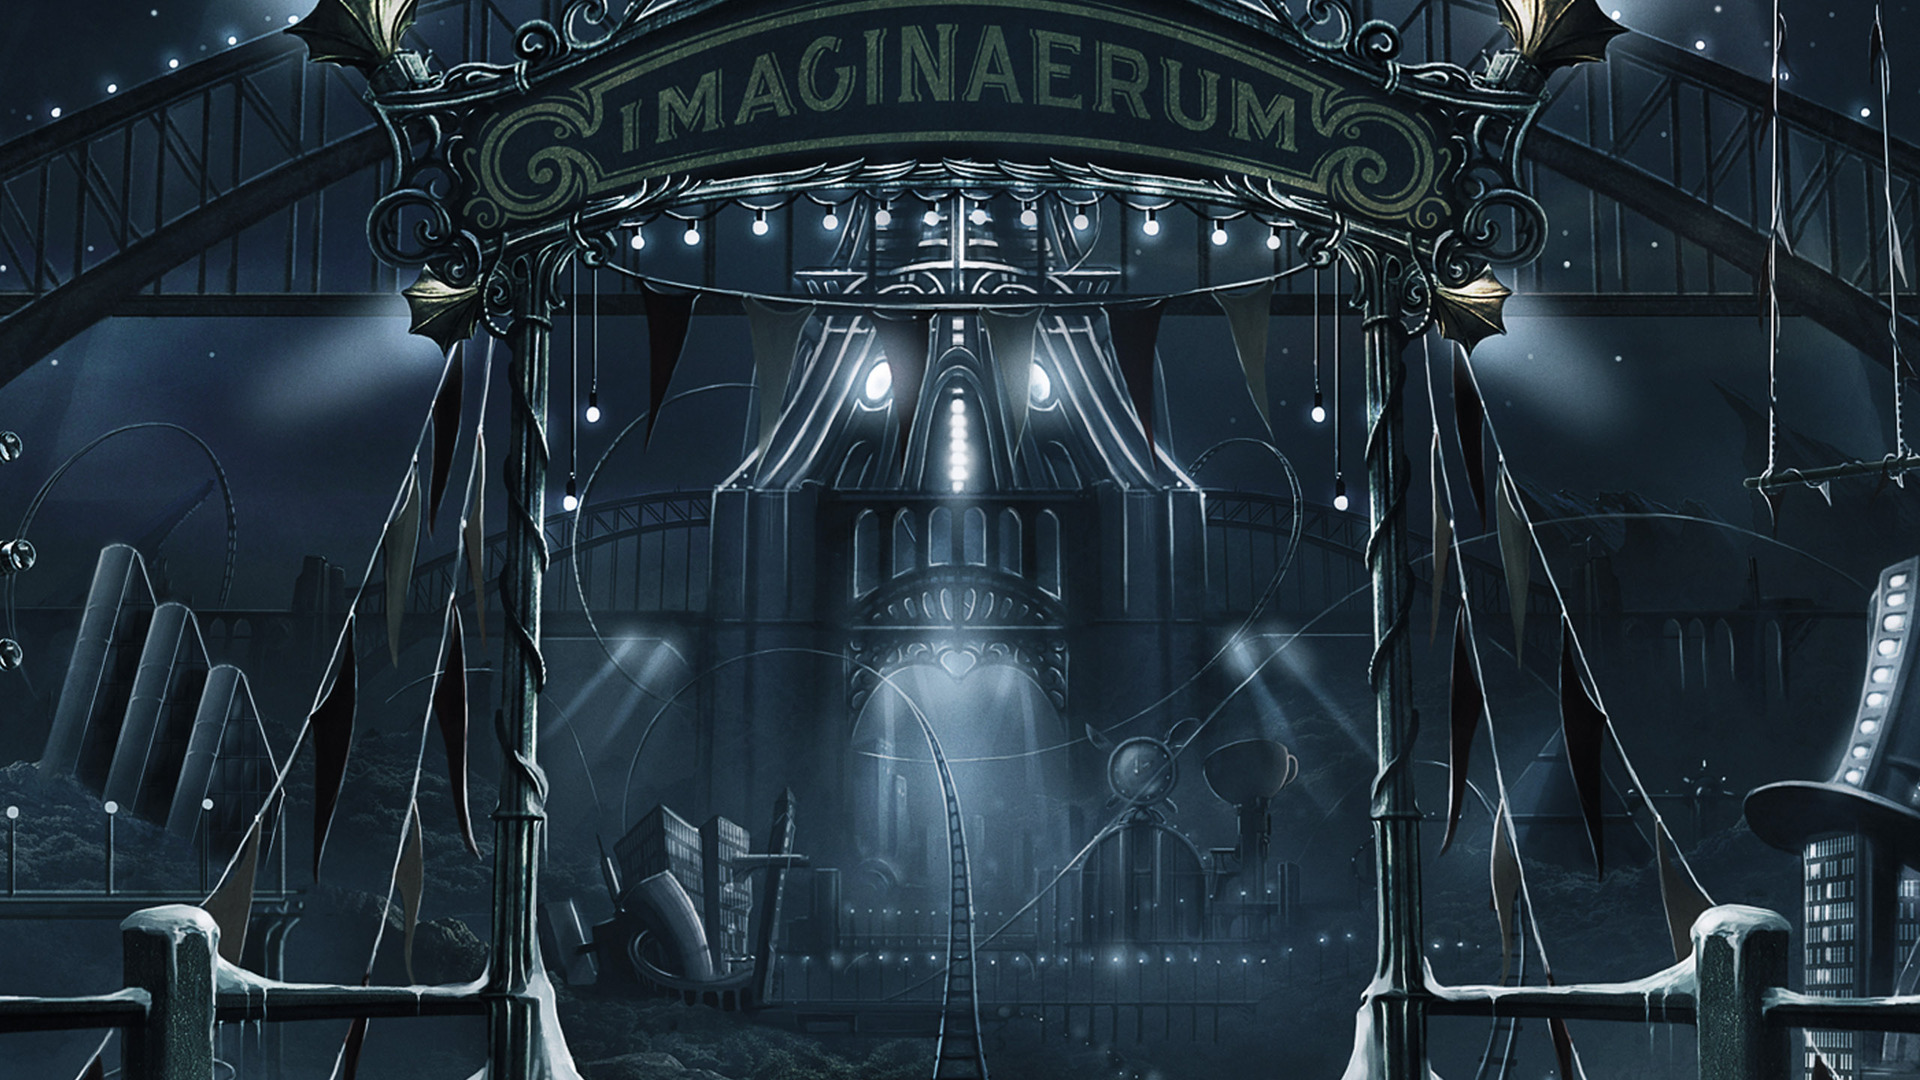 Nightwish Imaginaerum Wallpaper By Artfall